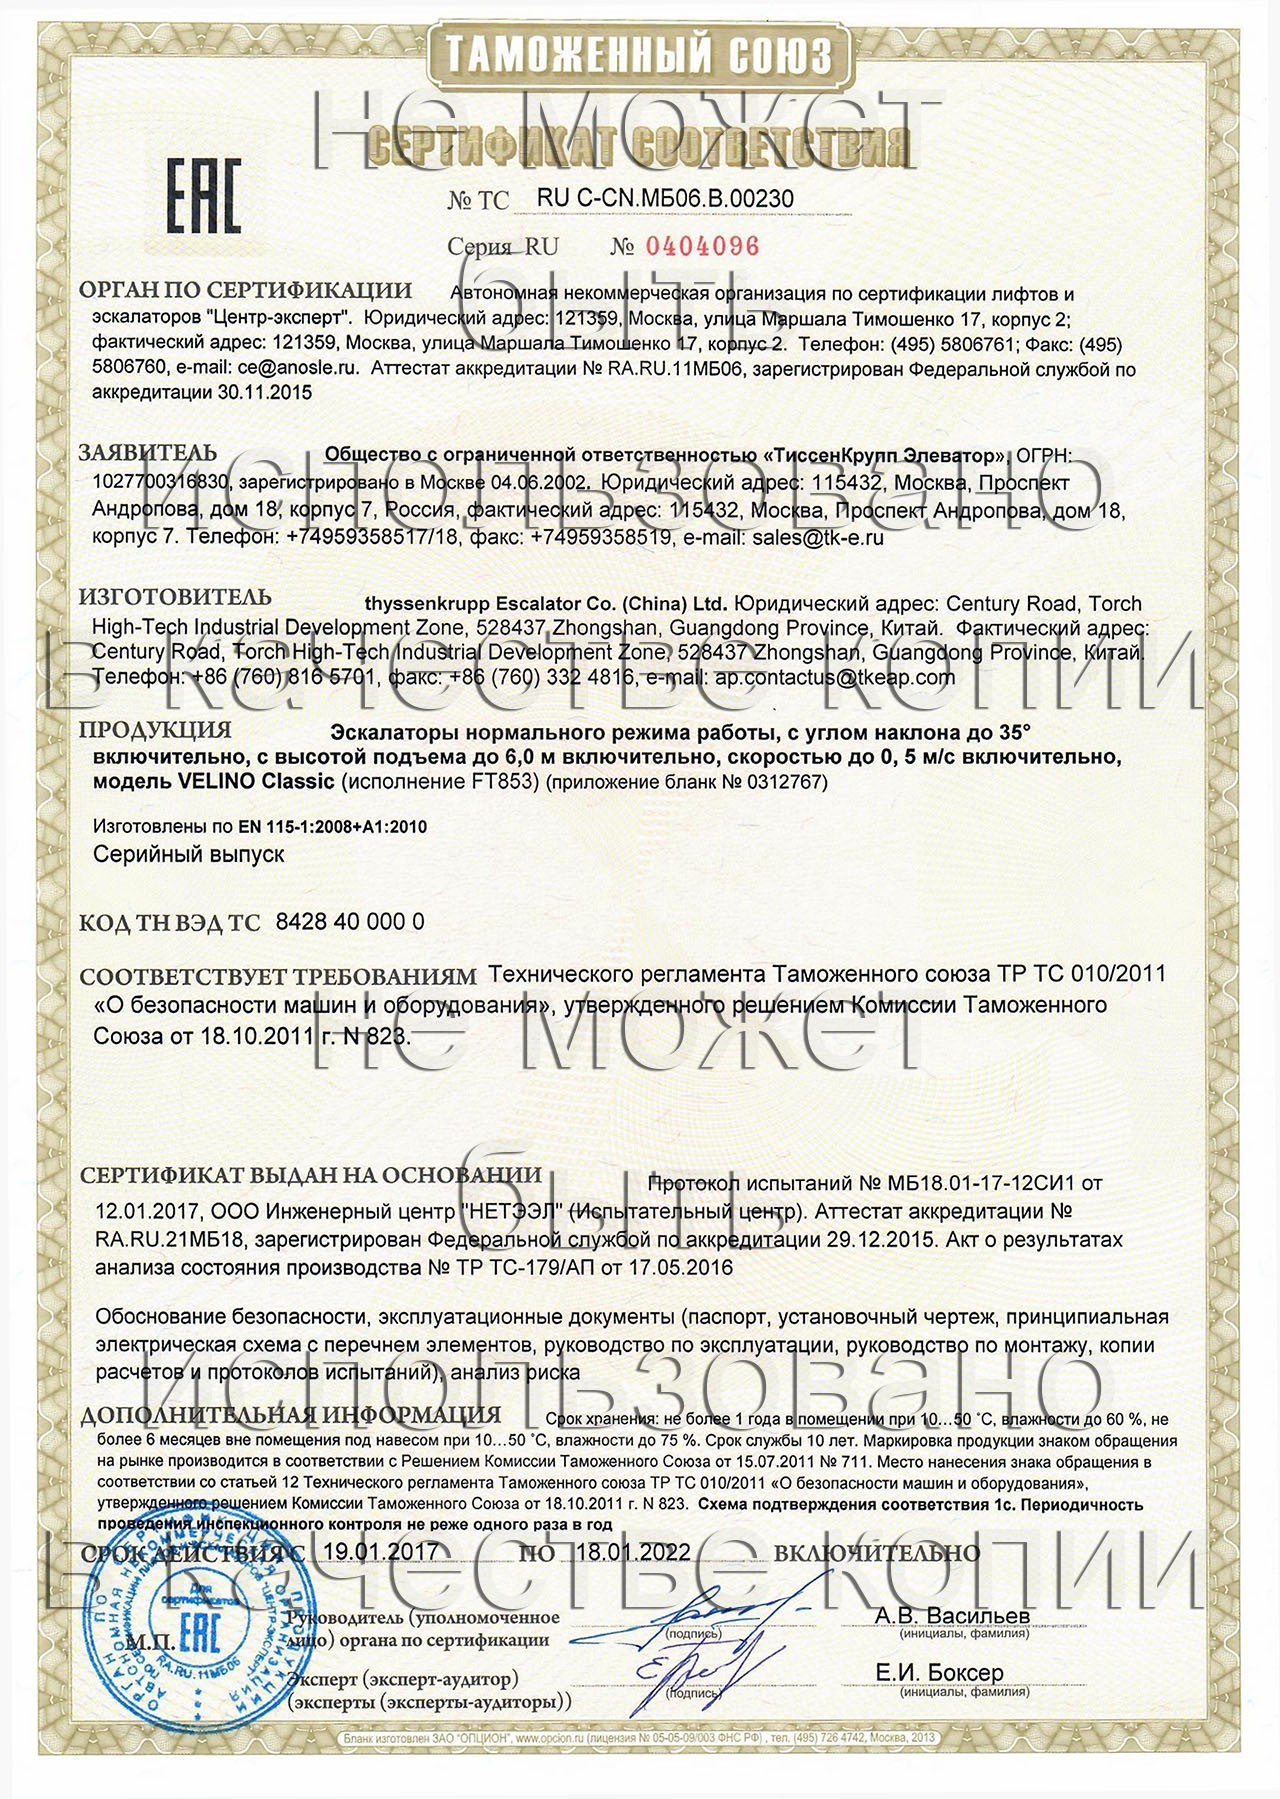 сертификат ТС RU С-CN.МБ06.В.00230 на эскалаторы нормального режима работы